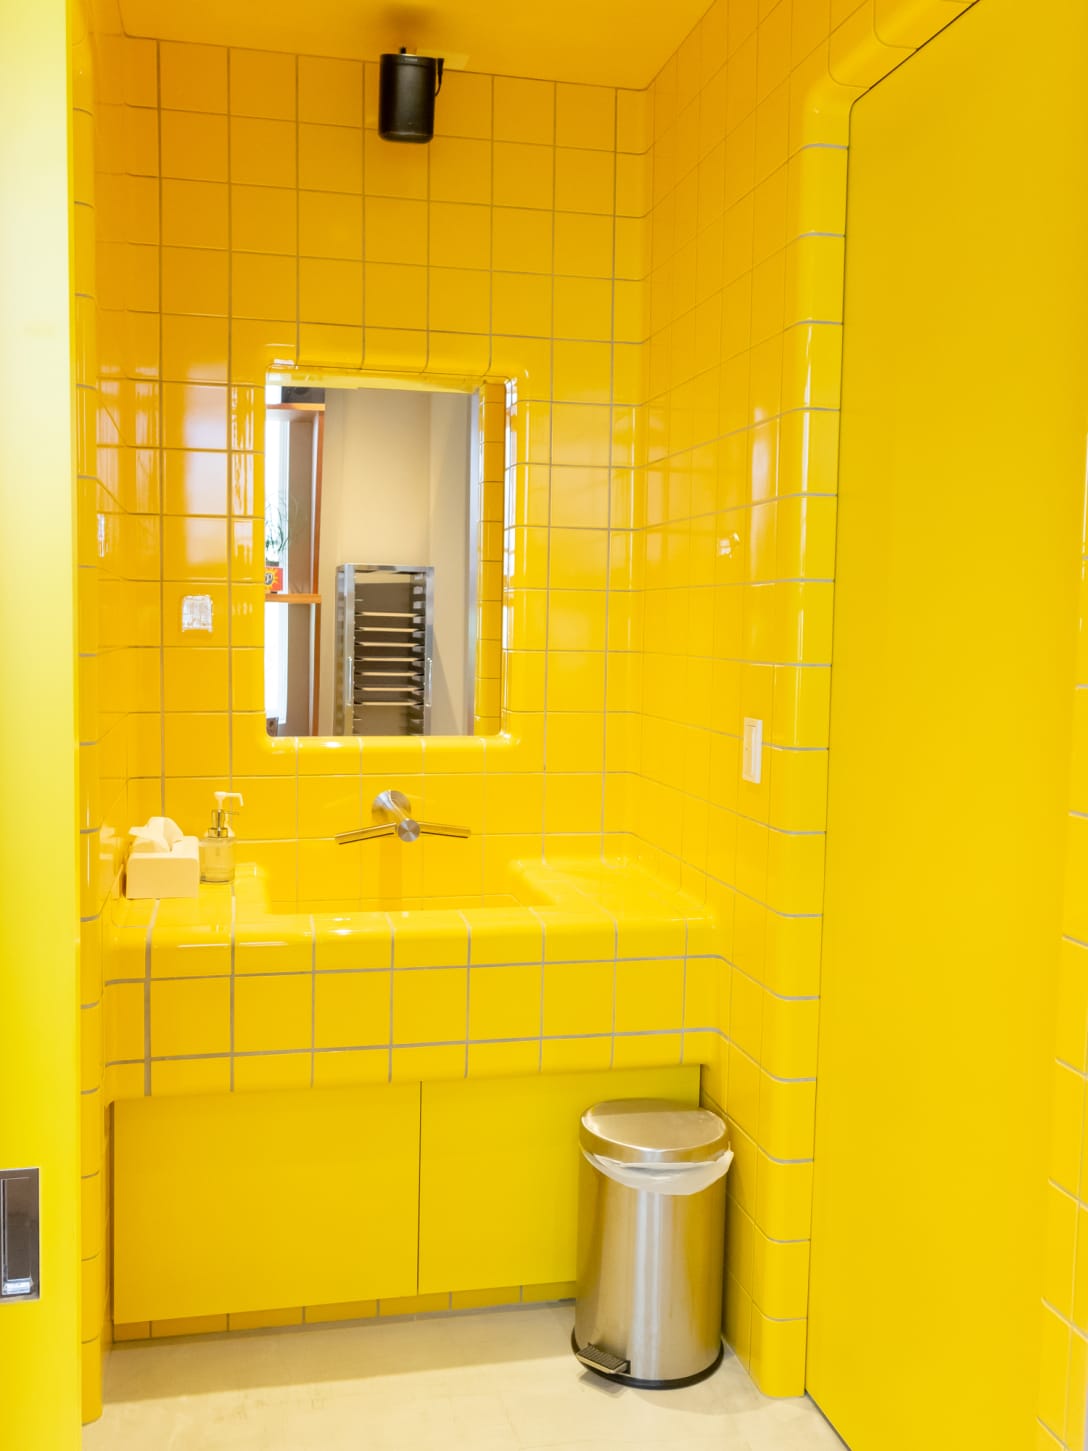 スウェーデンの地下鉄のトイレを再現した洗面台